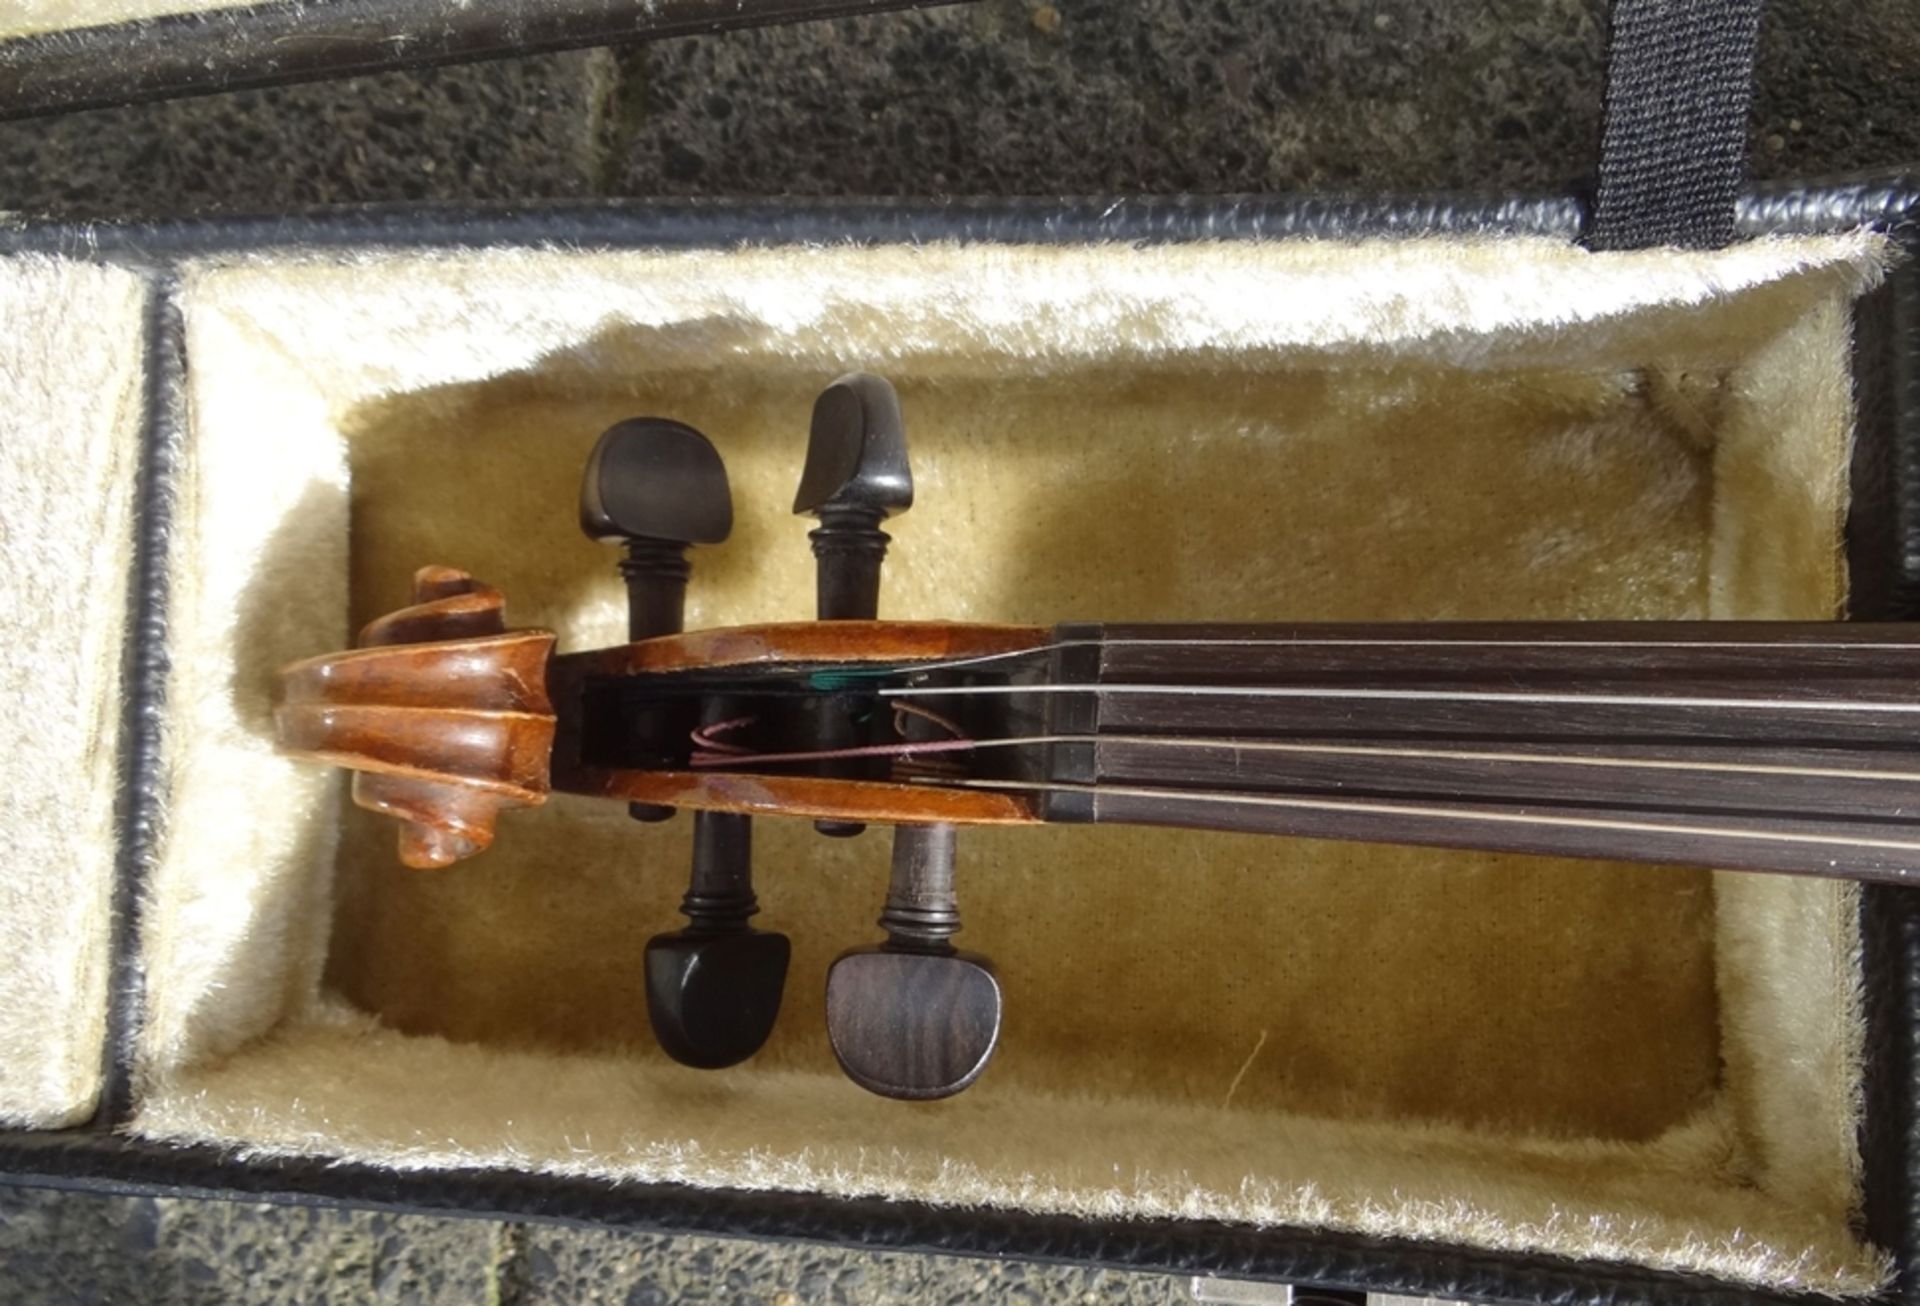 alte Geige in Koffer, guter Zustand, mit Bogen, Geige L-60 cm, - Bild 4 aus 7